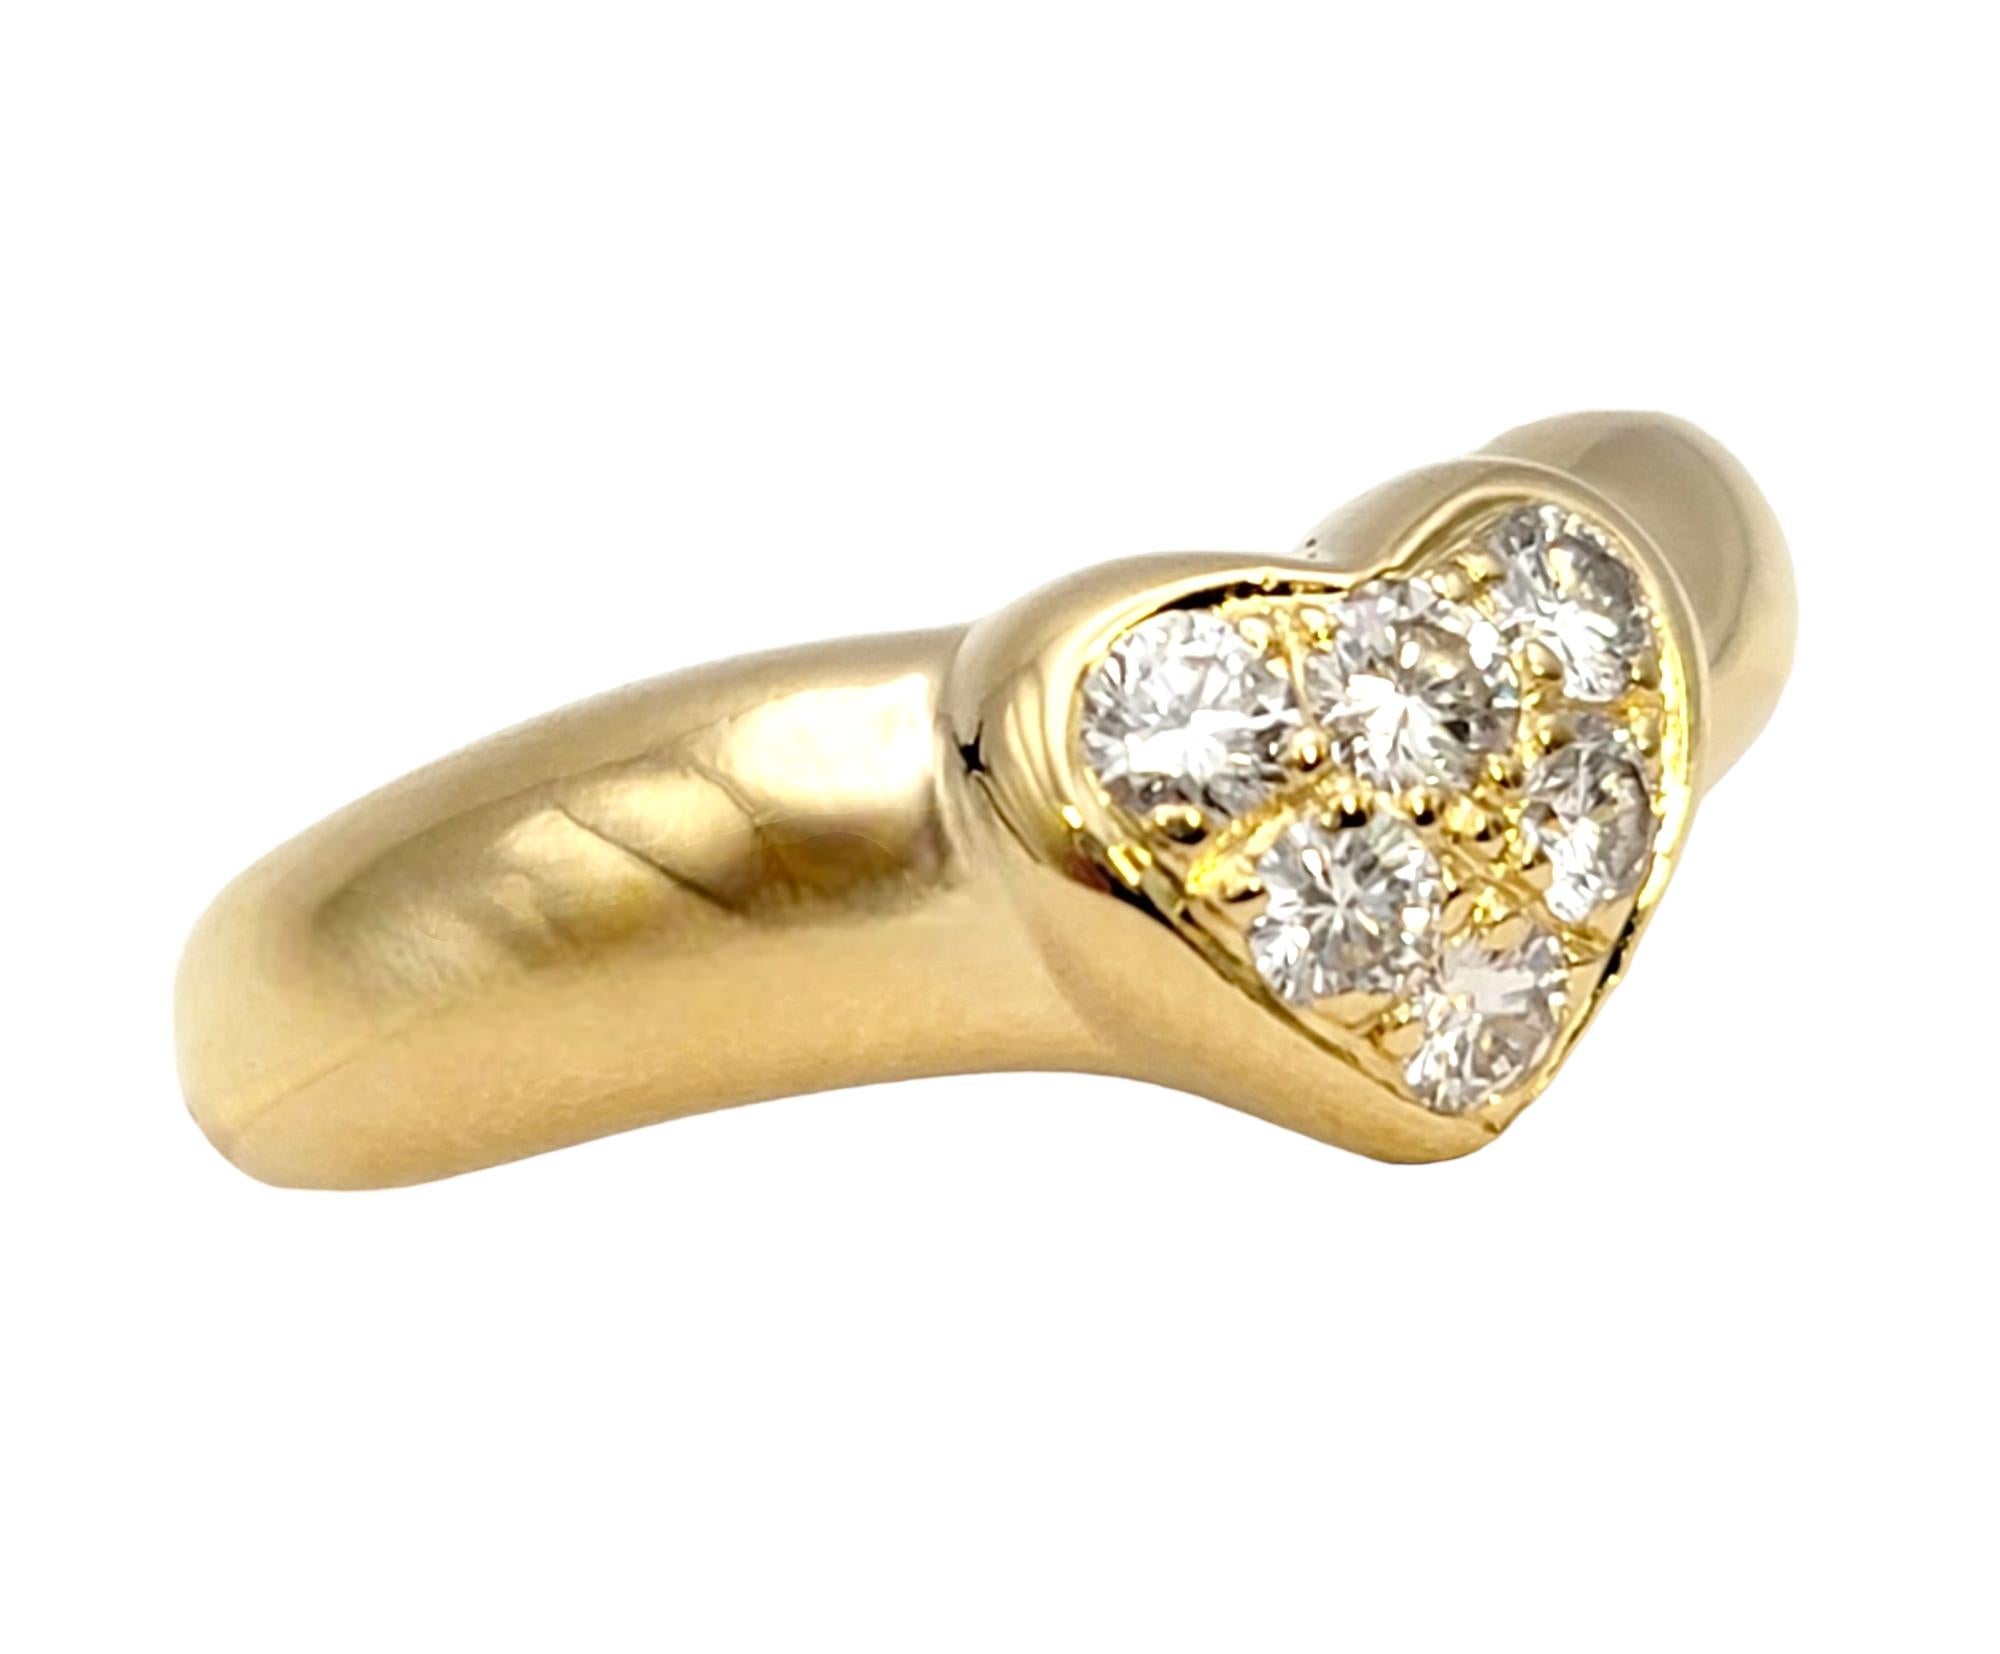 Ringgröße: 3,5

Dieser schöne Etoile-Diamantring von Tiffany & Co. im Ruhestand glänzt am Finger. Tiffany & Co. wurde 1837 in New York City gegründet und ist eines der traditionsreichsten Luxusdesignhäuser der Welt, das weltweit für sein innovatives